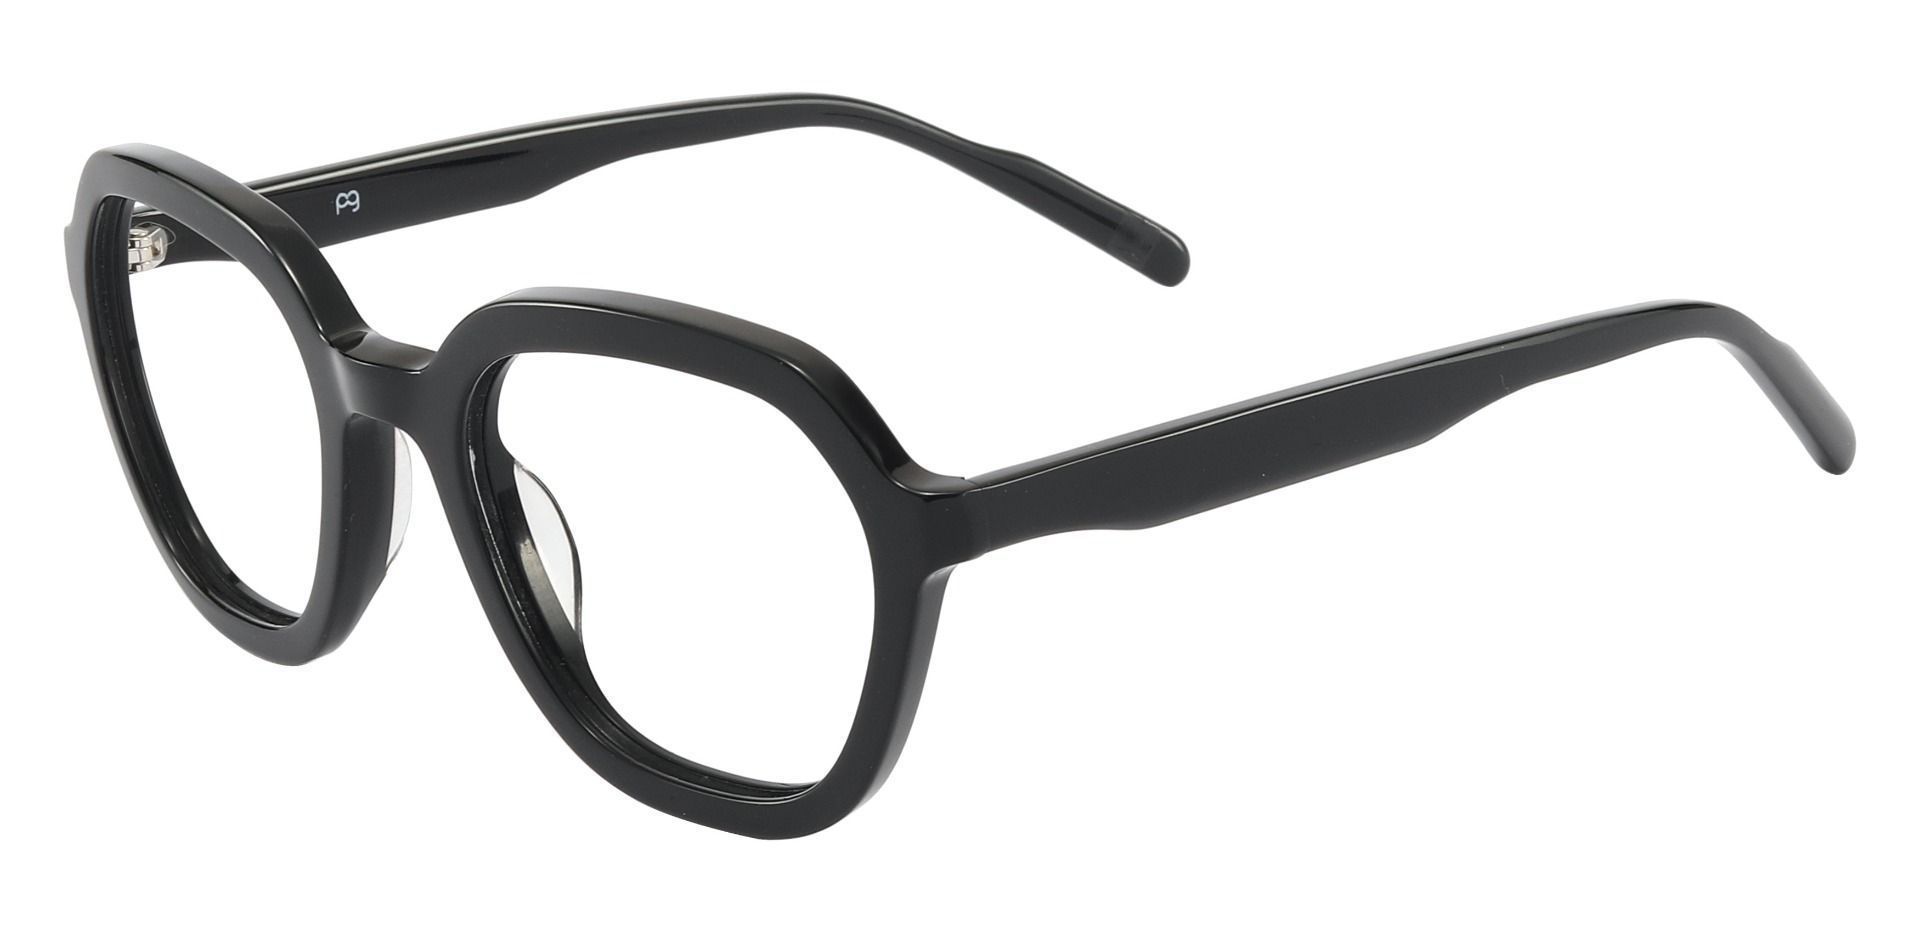 Burke Geometric Eyeglasses Frame - Black